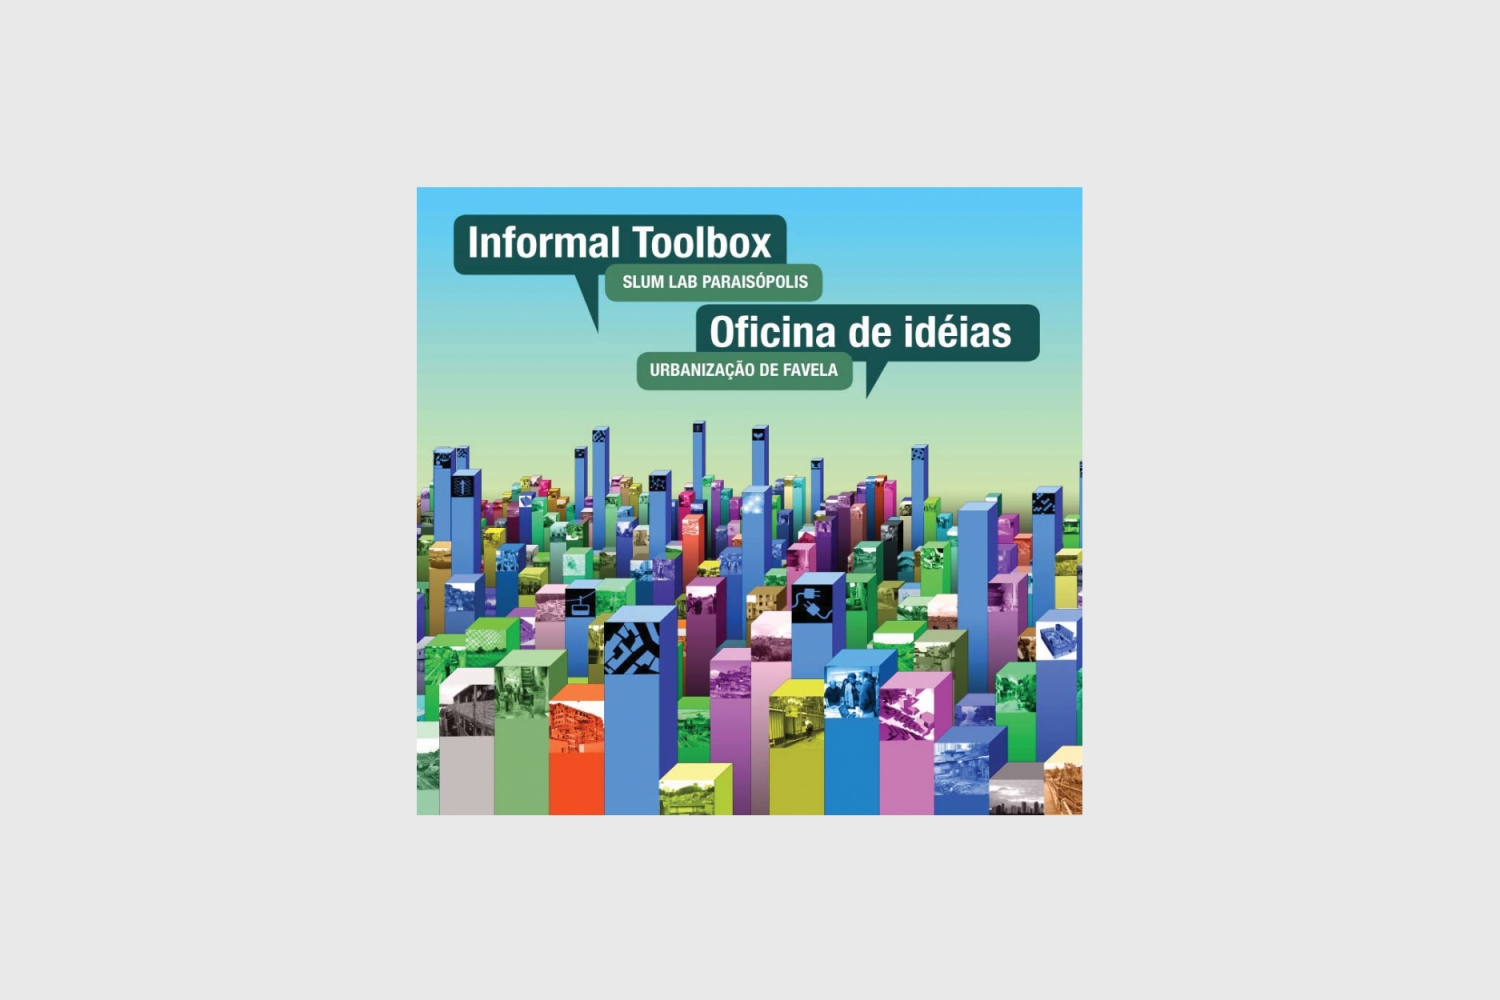 Informal Toolbox: SLUM Lab Paraisópolis